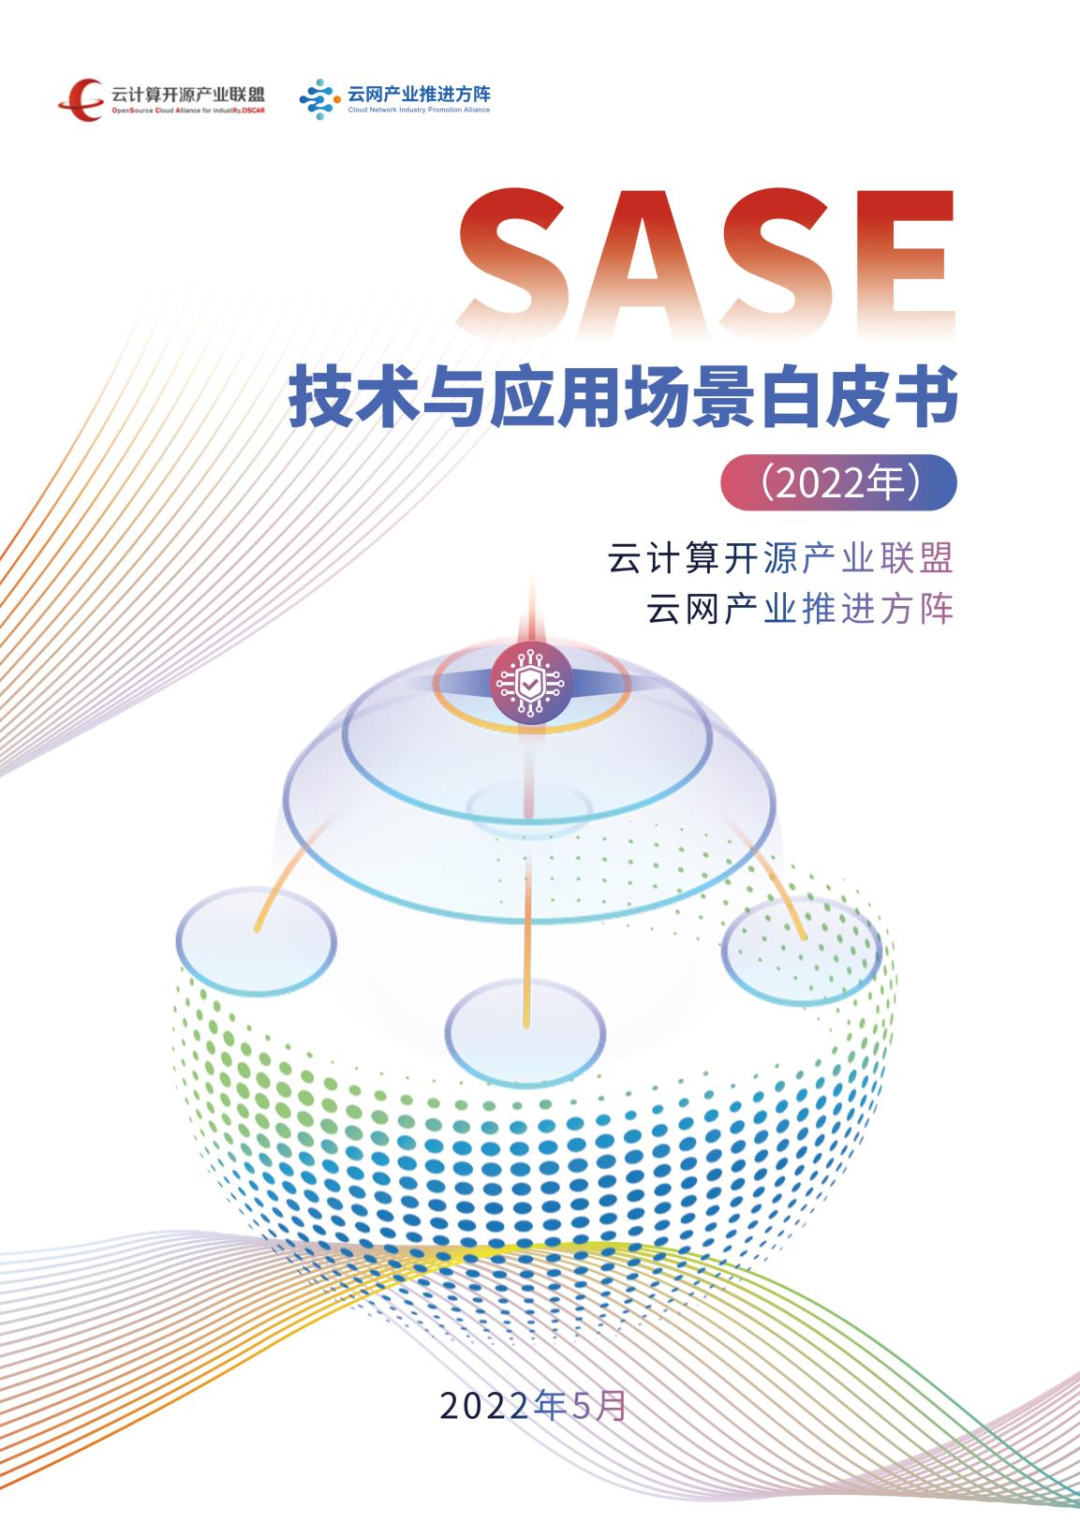 易安联参编《SASE技术与应用场景白皮书》正式发布